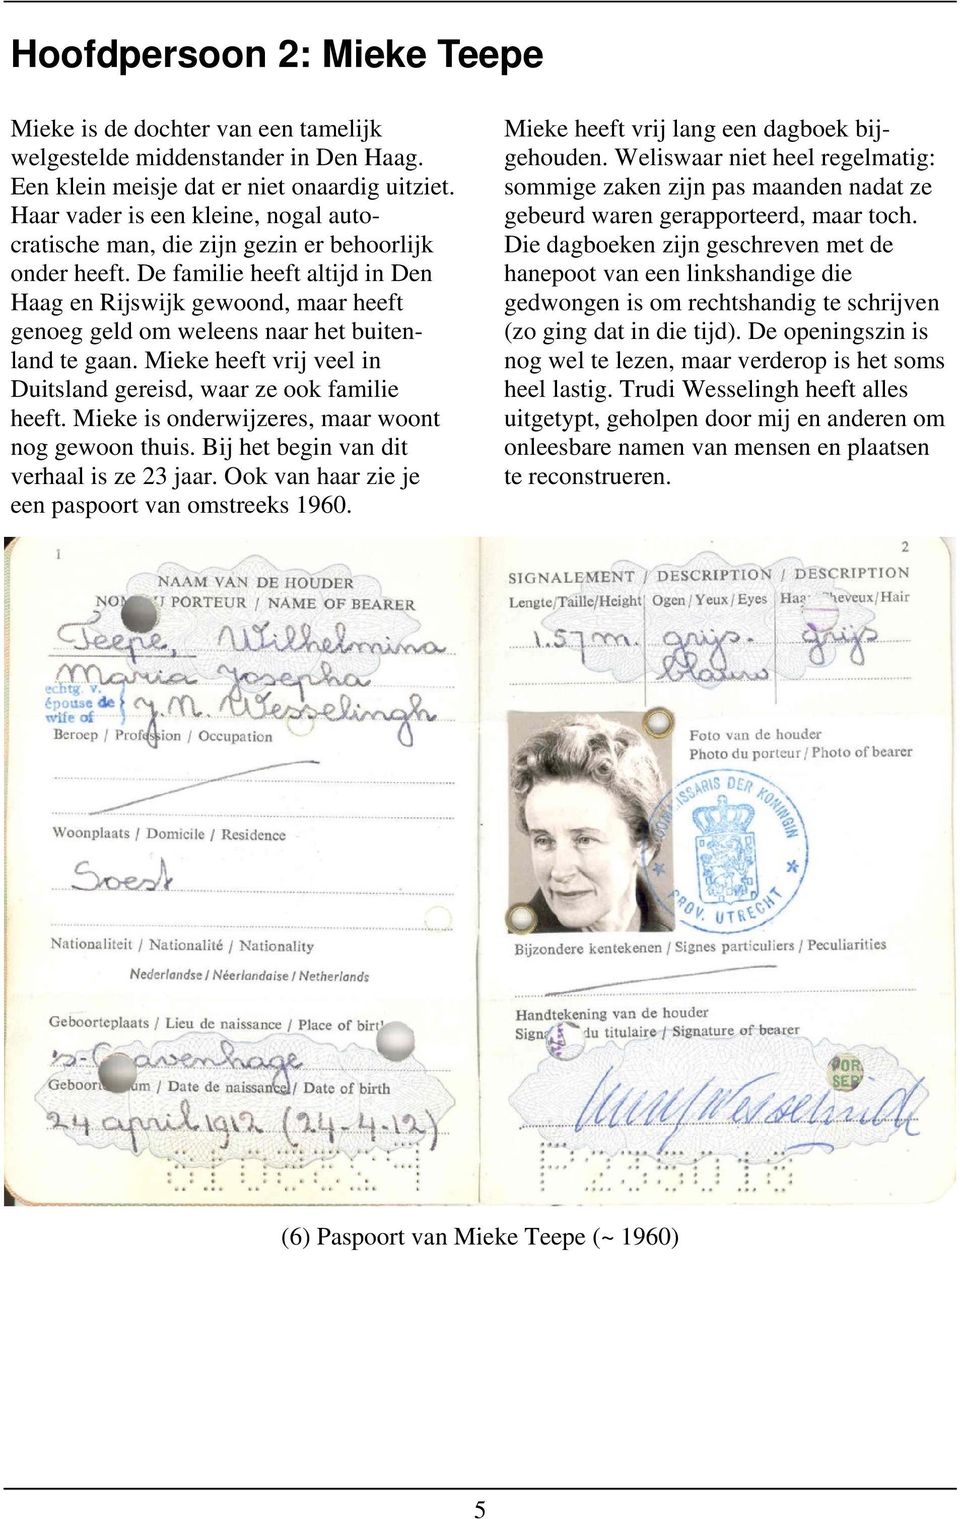 De familie heeft altijd in Den Haag en Rijswijk gewoond, maar heeft genoeg geld om weleens naar het buitenland te gaan. Mieke heeft vrij veel in Duitsland gereisd, waar ze ook familie heeft.